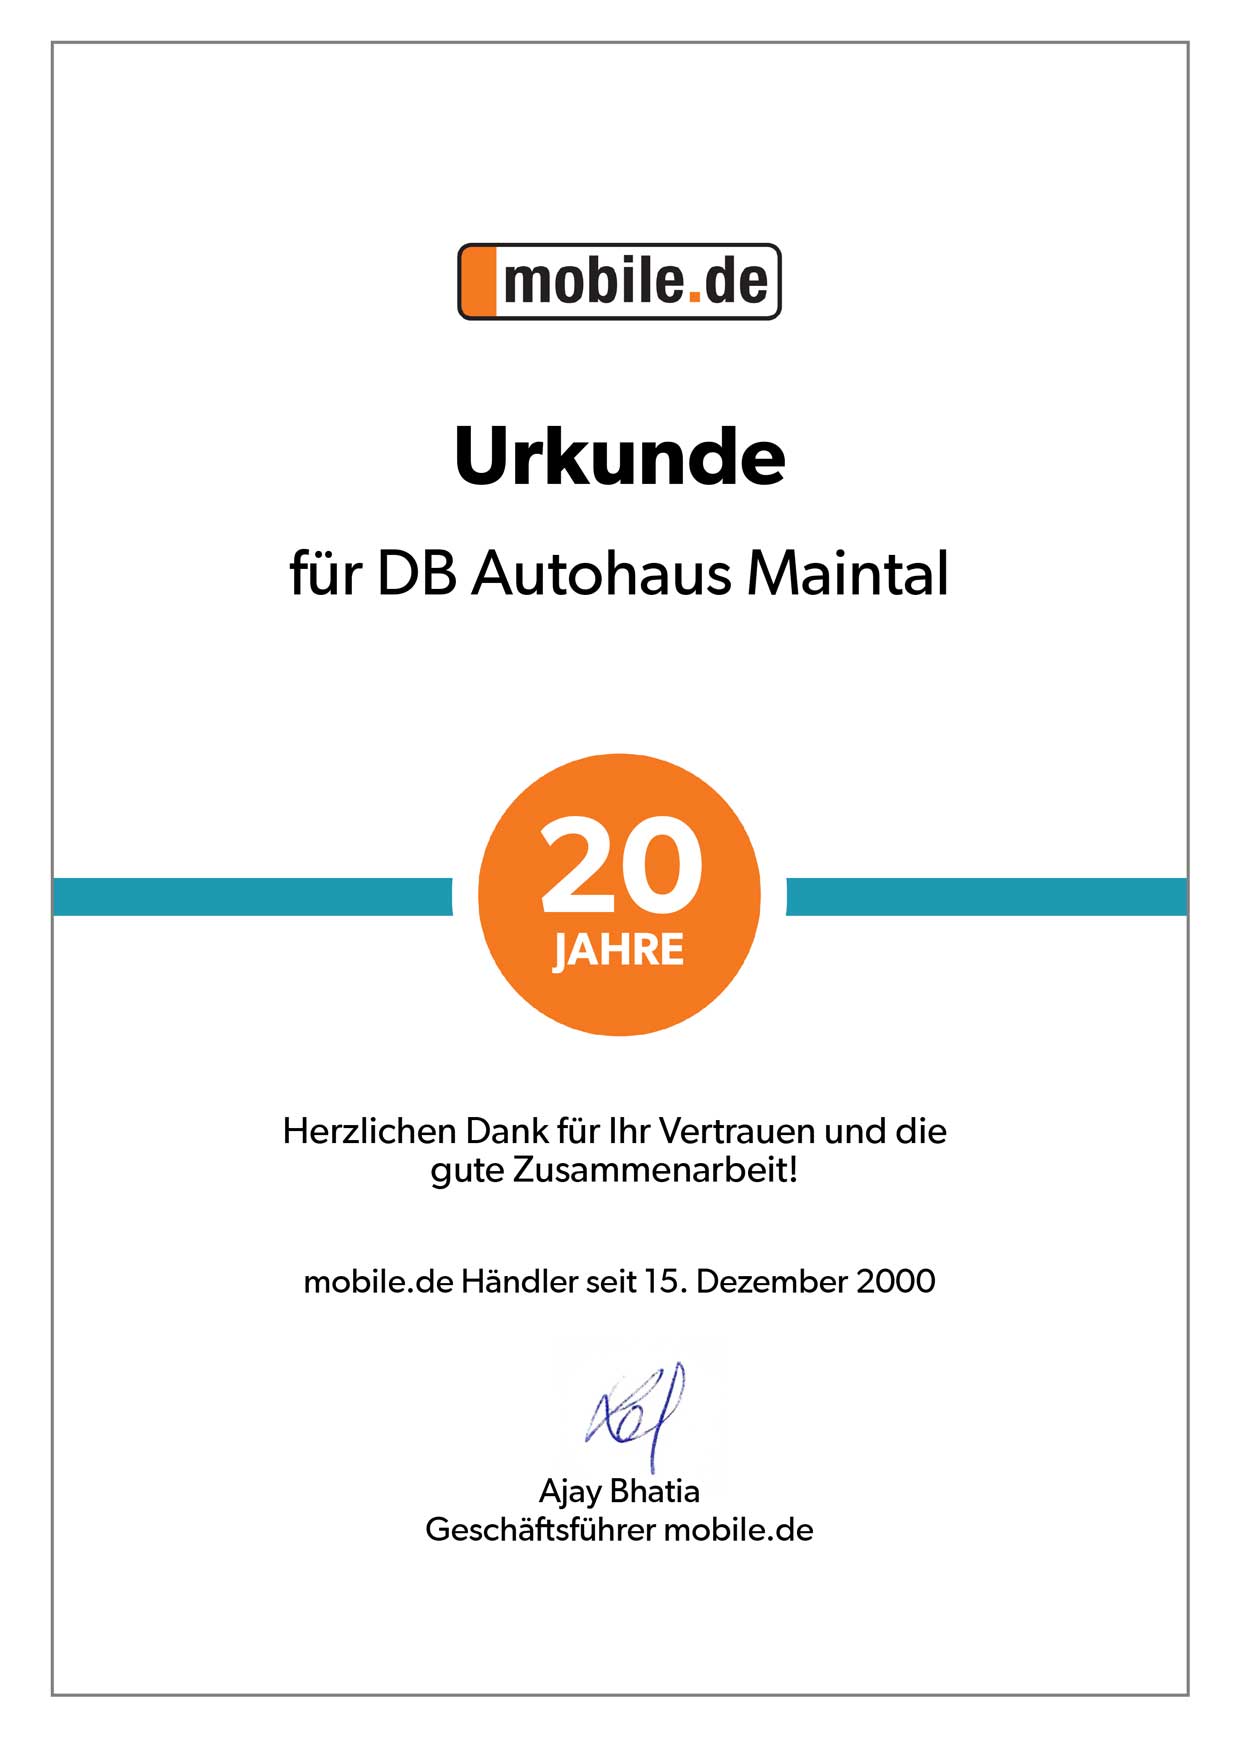 Urkunde 20 Jahre Zusammenarbeit von DB Autohaus Maintal mit mobile.de